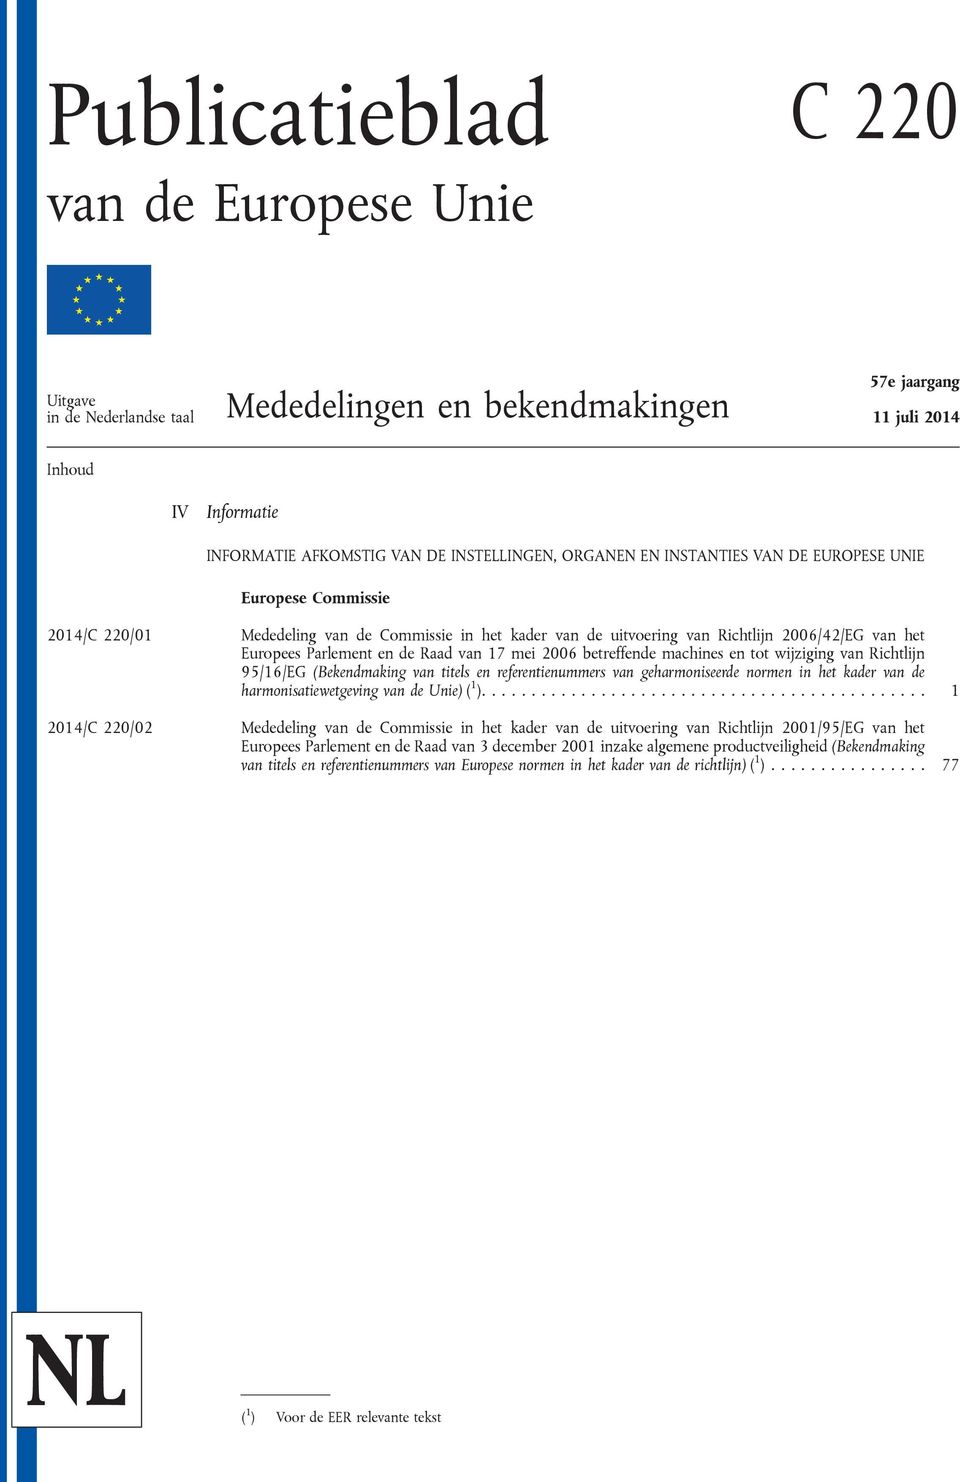 van 17 mei 2006 betreffende machines en tot wijziging van Richtlijn 95/16/EG (Bekendmaking van titels en referentienummers van geharmoniseerde normen in het kader van de harmonisatiewetgeving van de